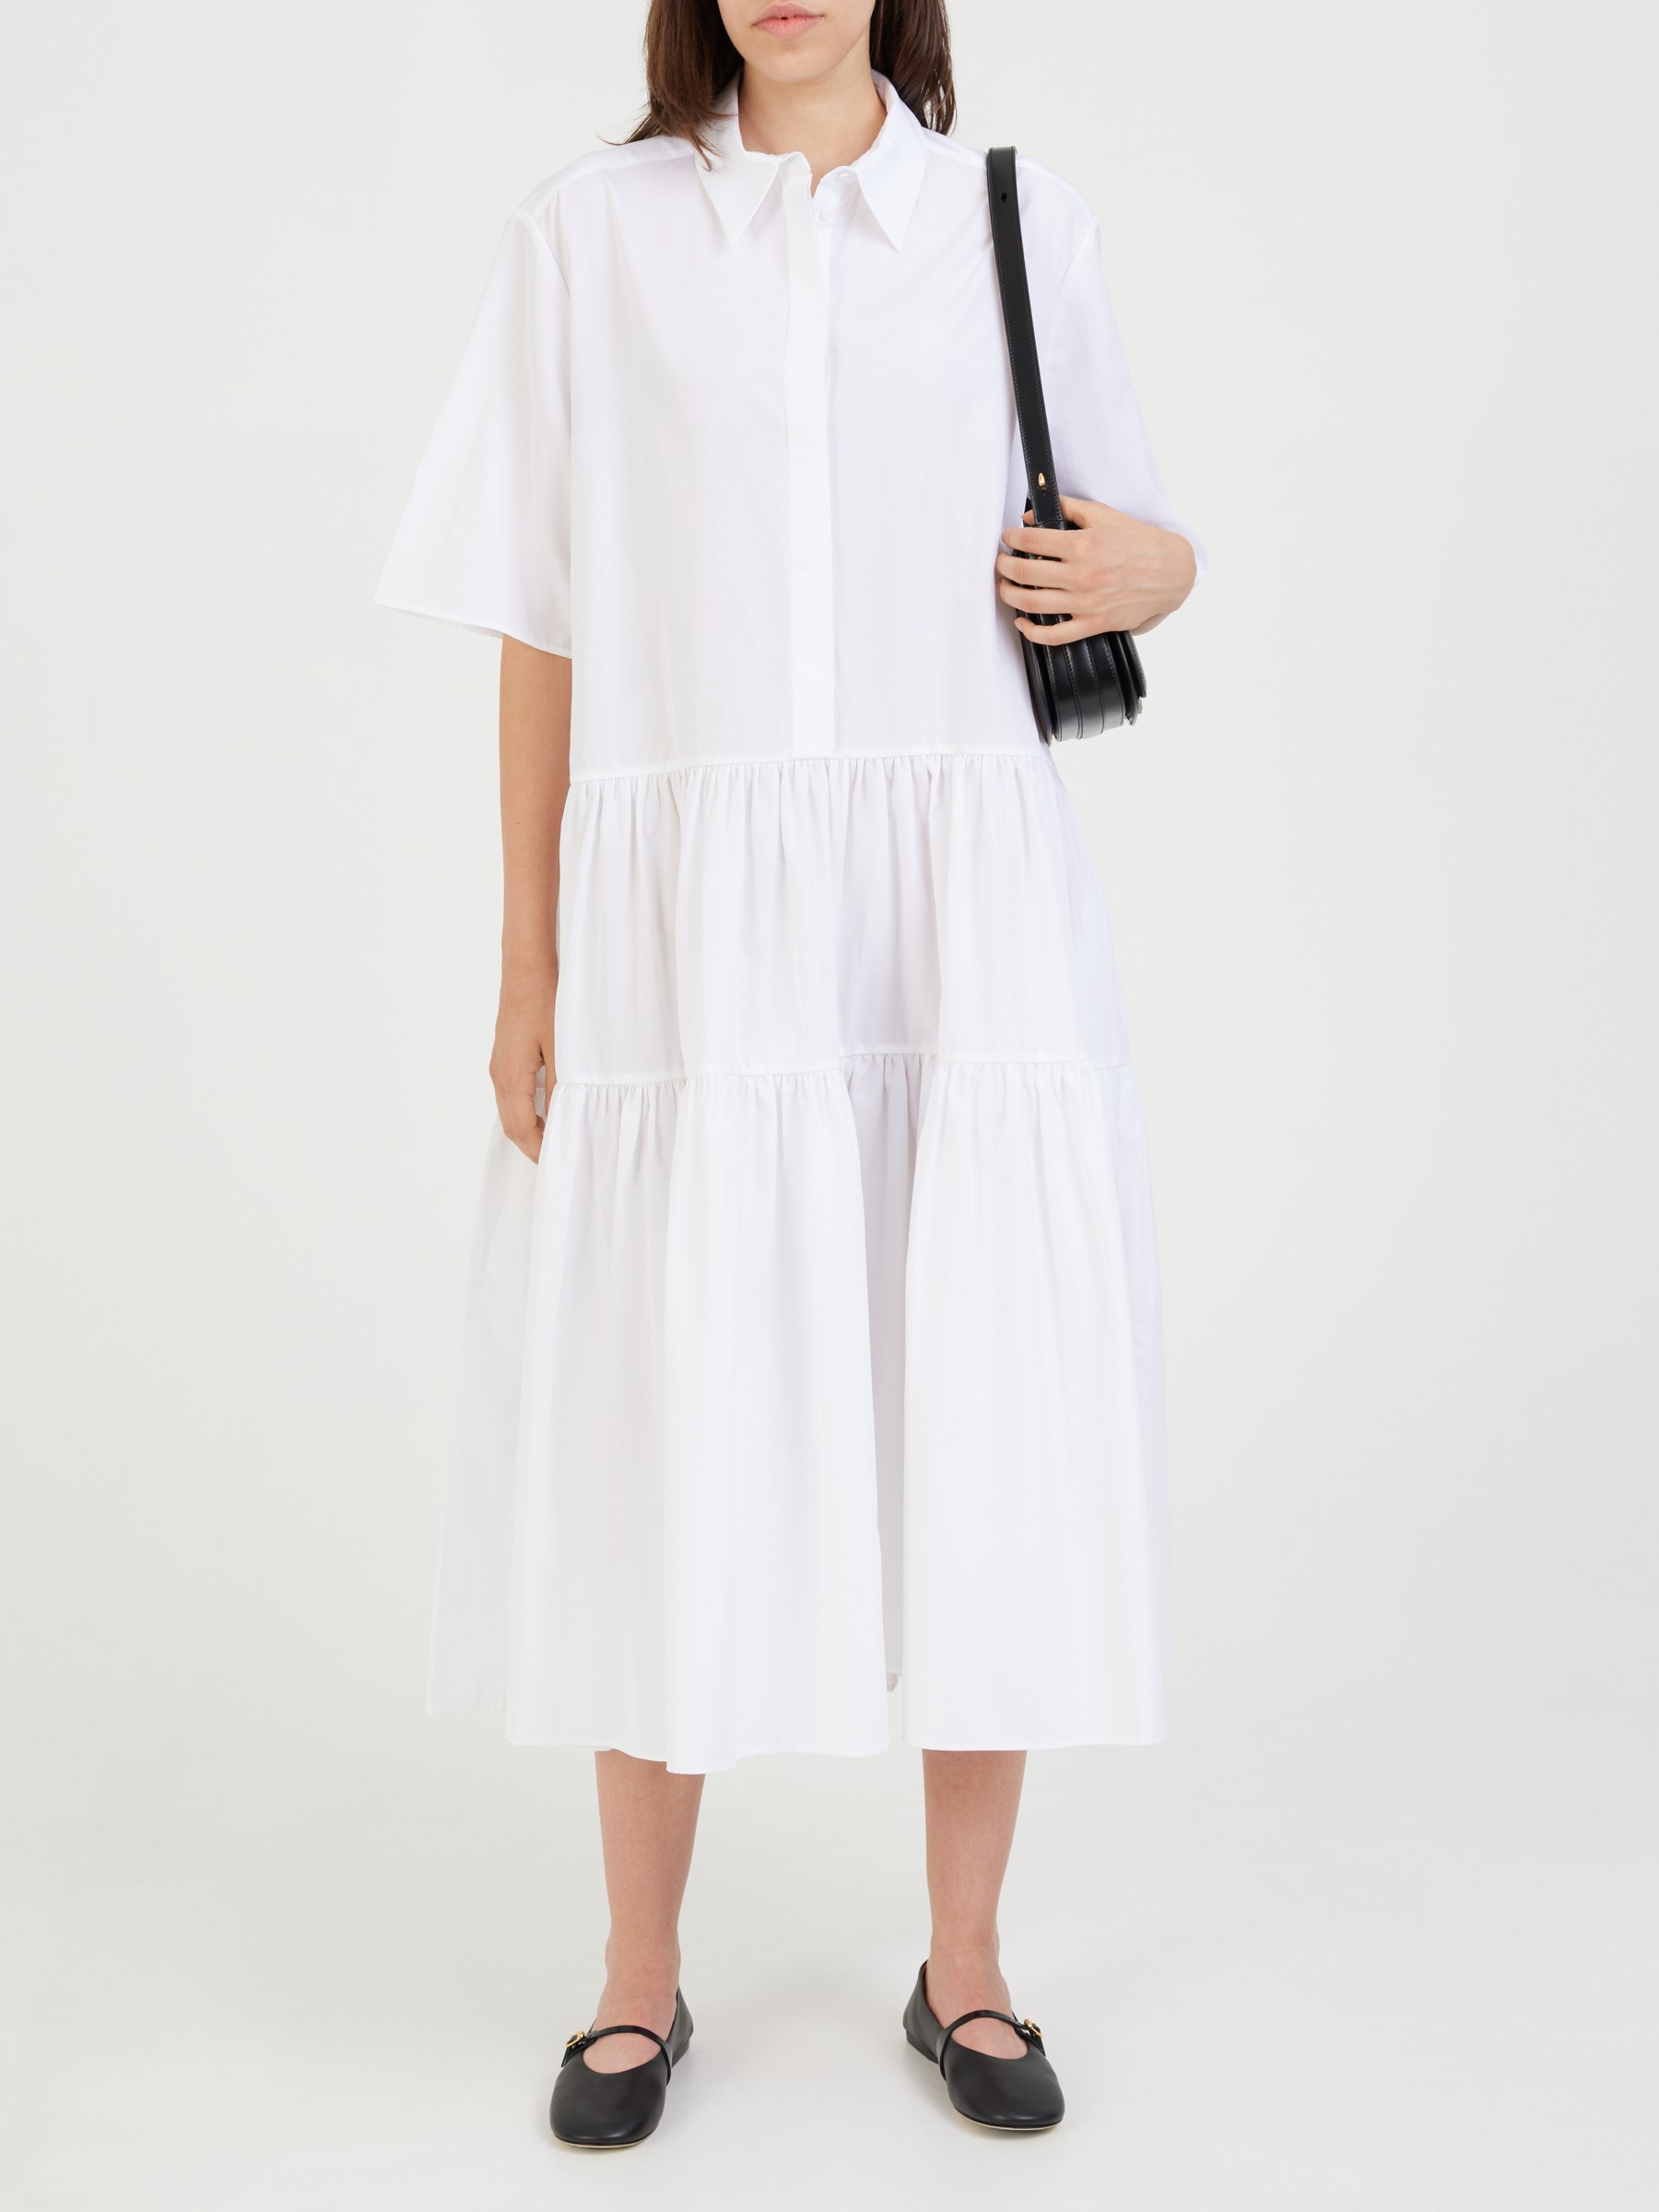 CECILIE BAHNSEN Blouse dress 'Primrose' White | CECILIE BAHNSEN